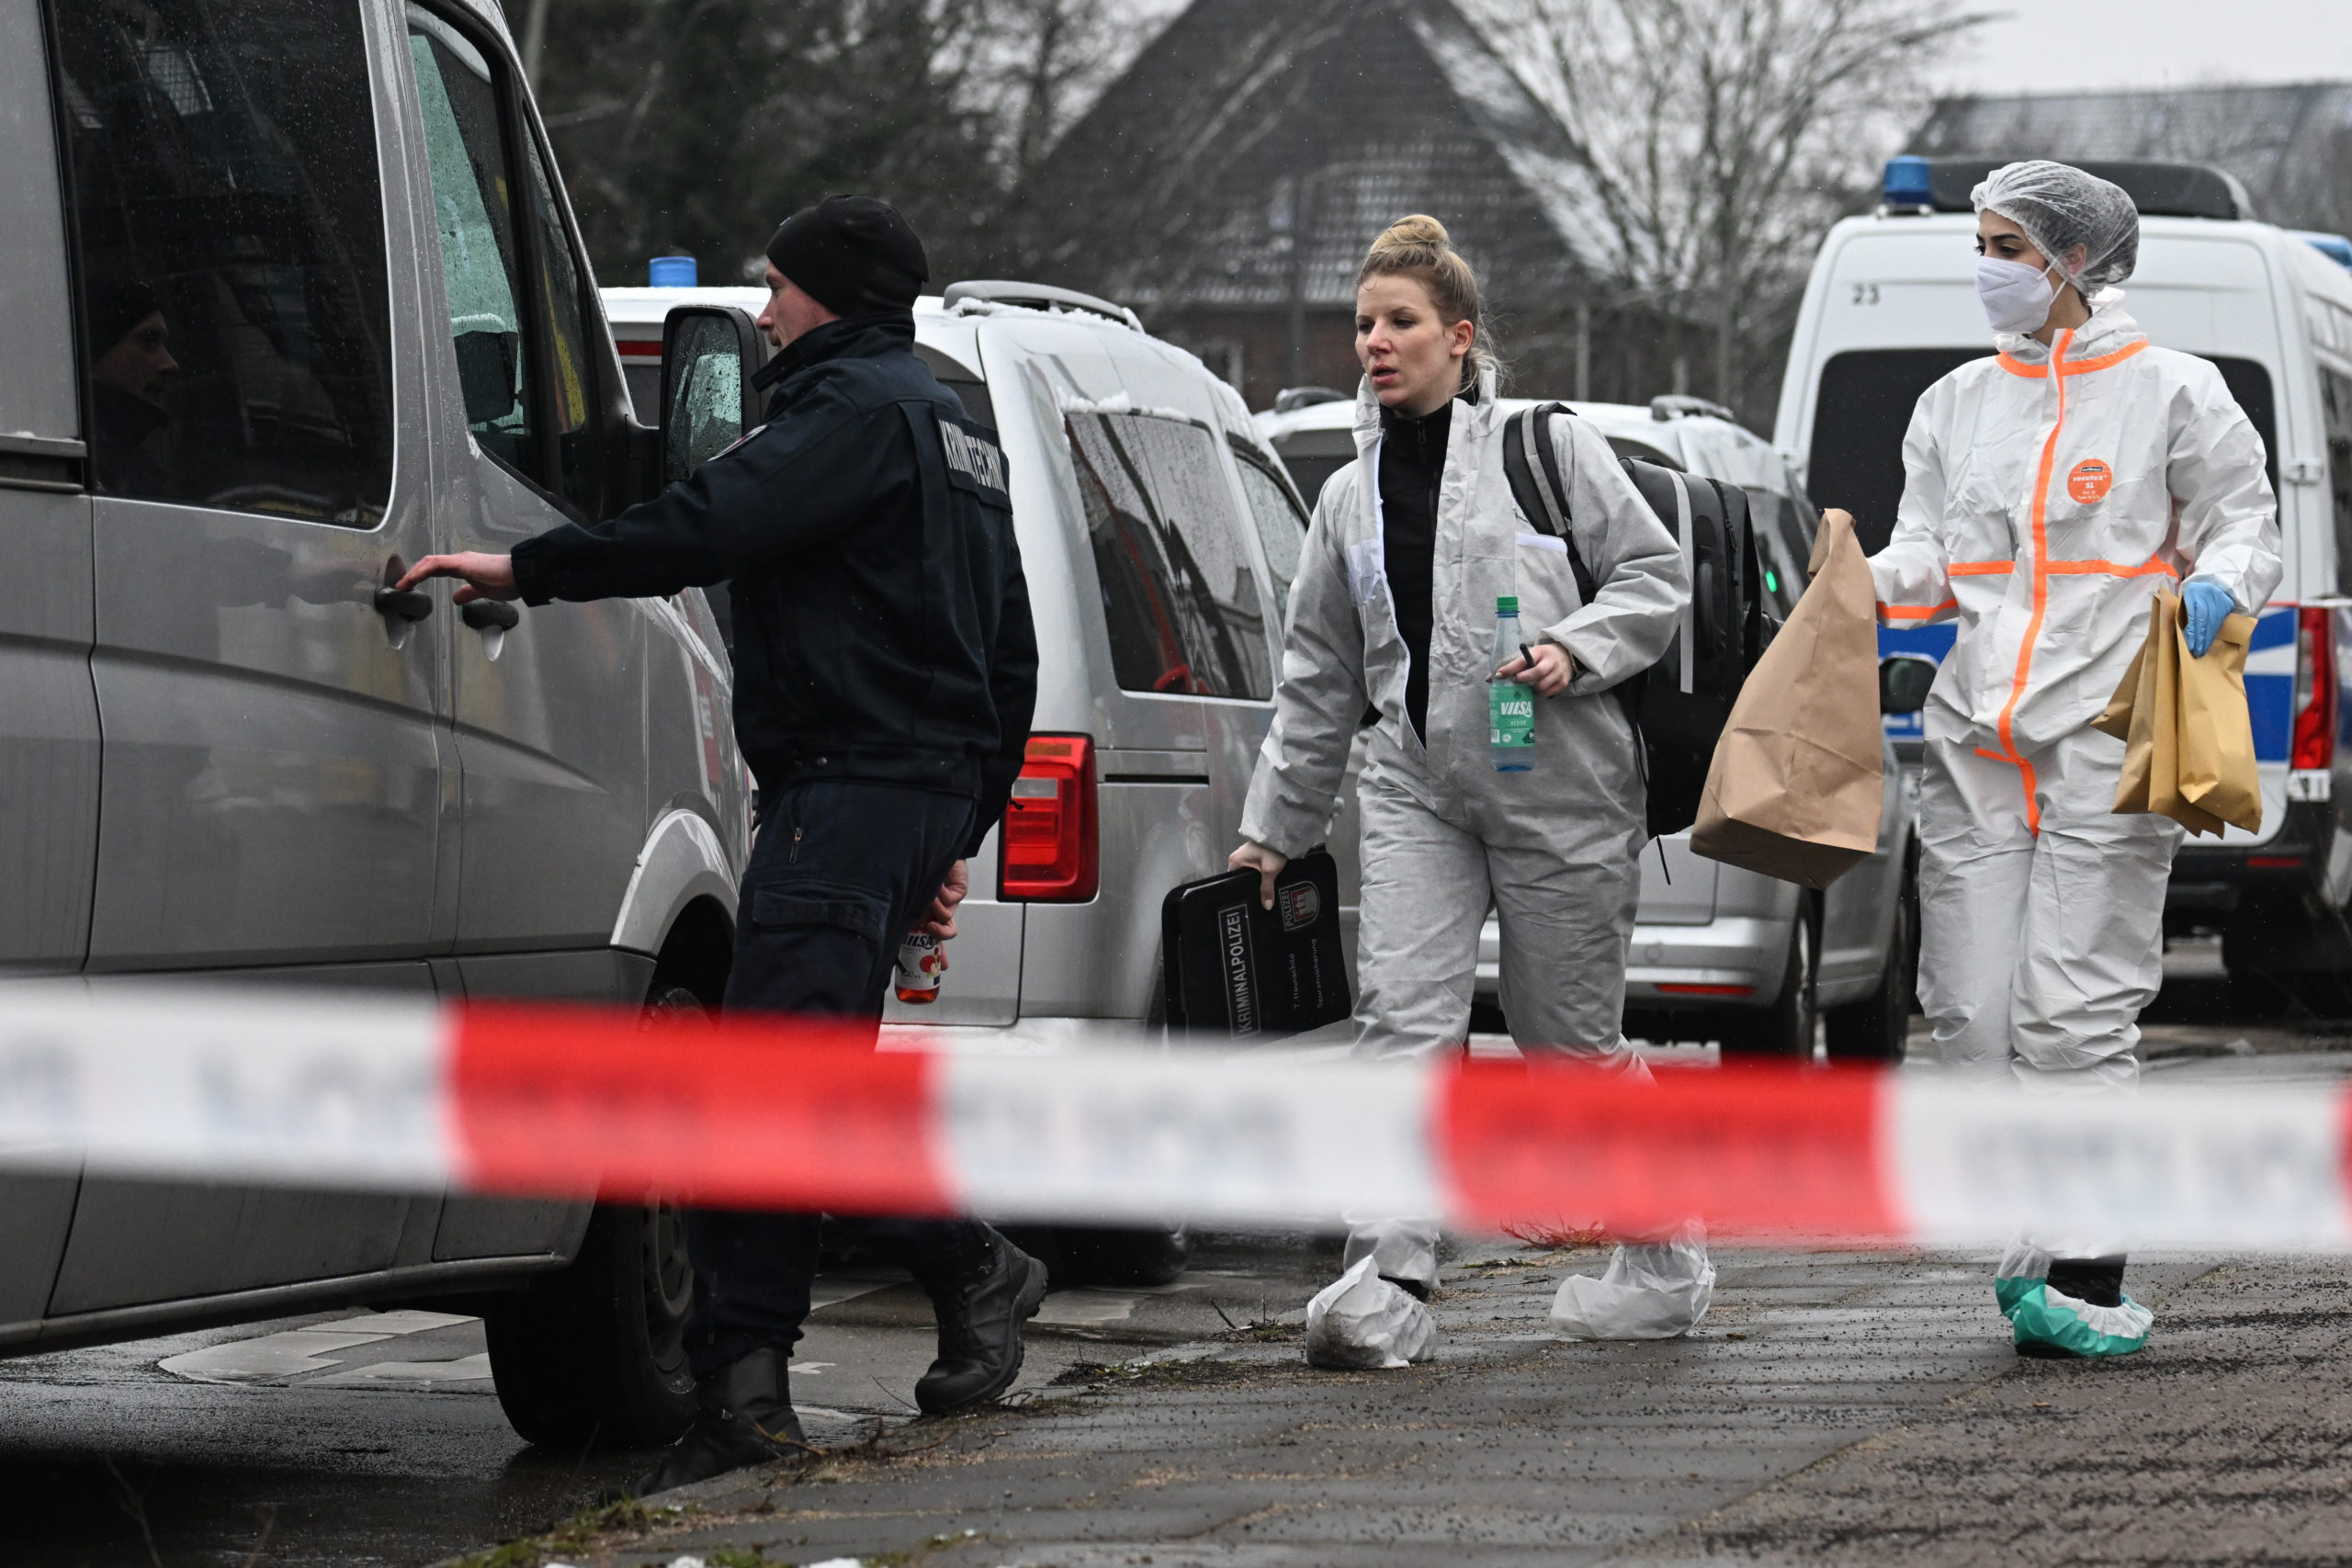 Almanya'daki kilise saldırganının kimliği belli oldu